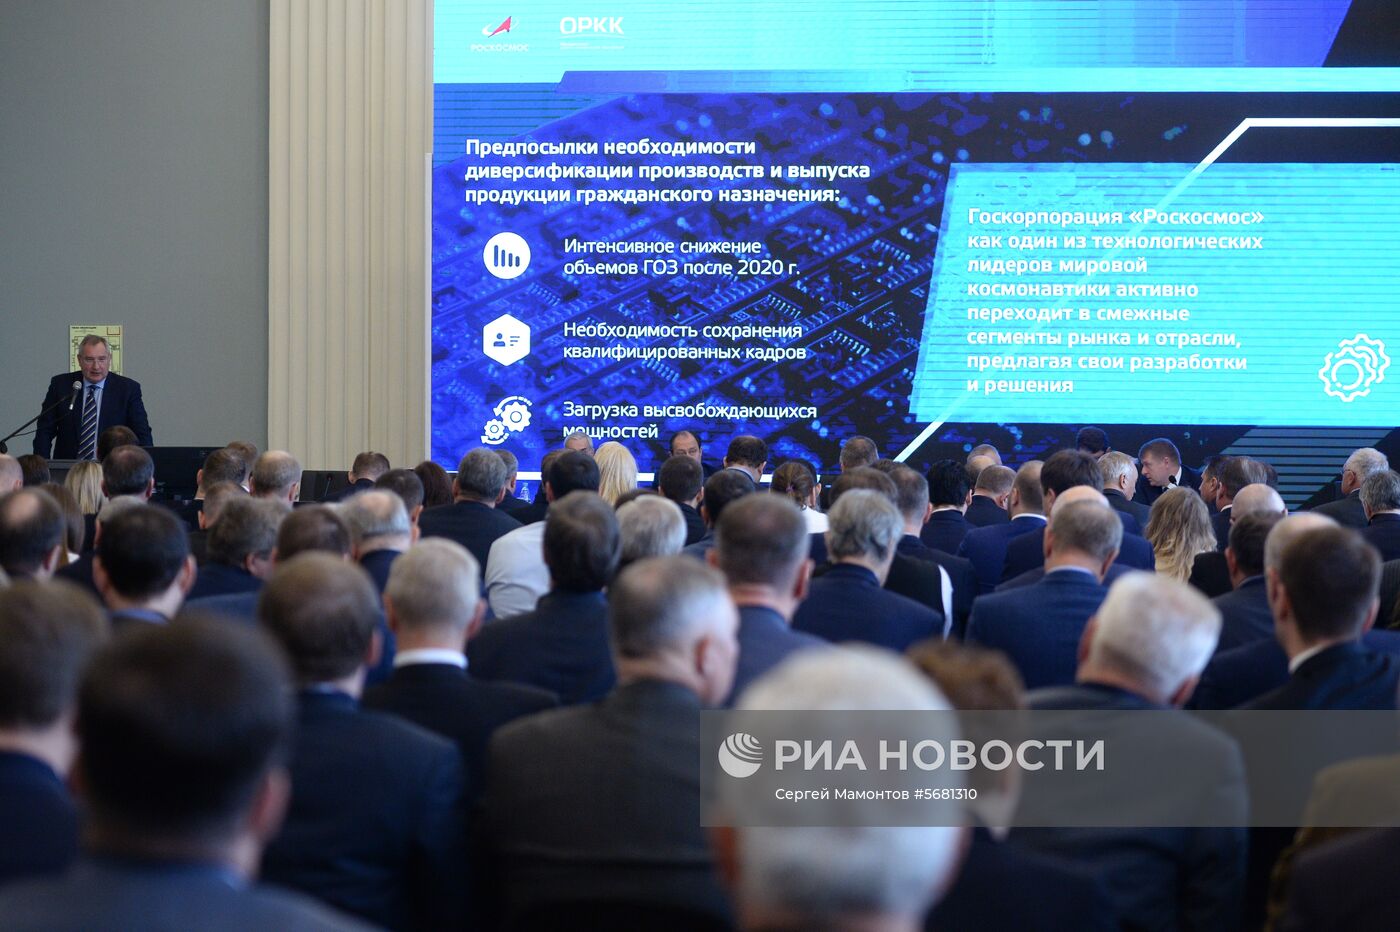 Конференция Роскосмоса по вопросам диверсификации 